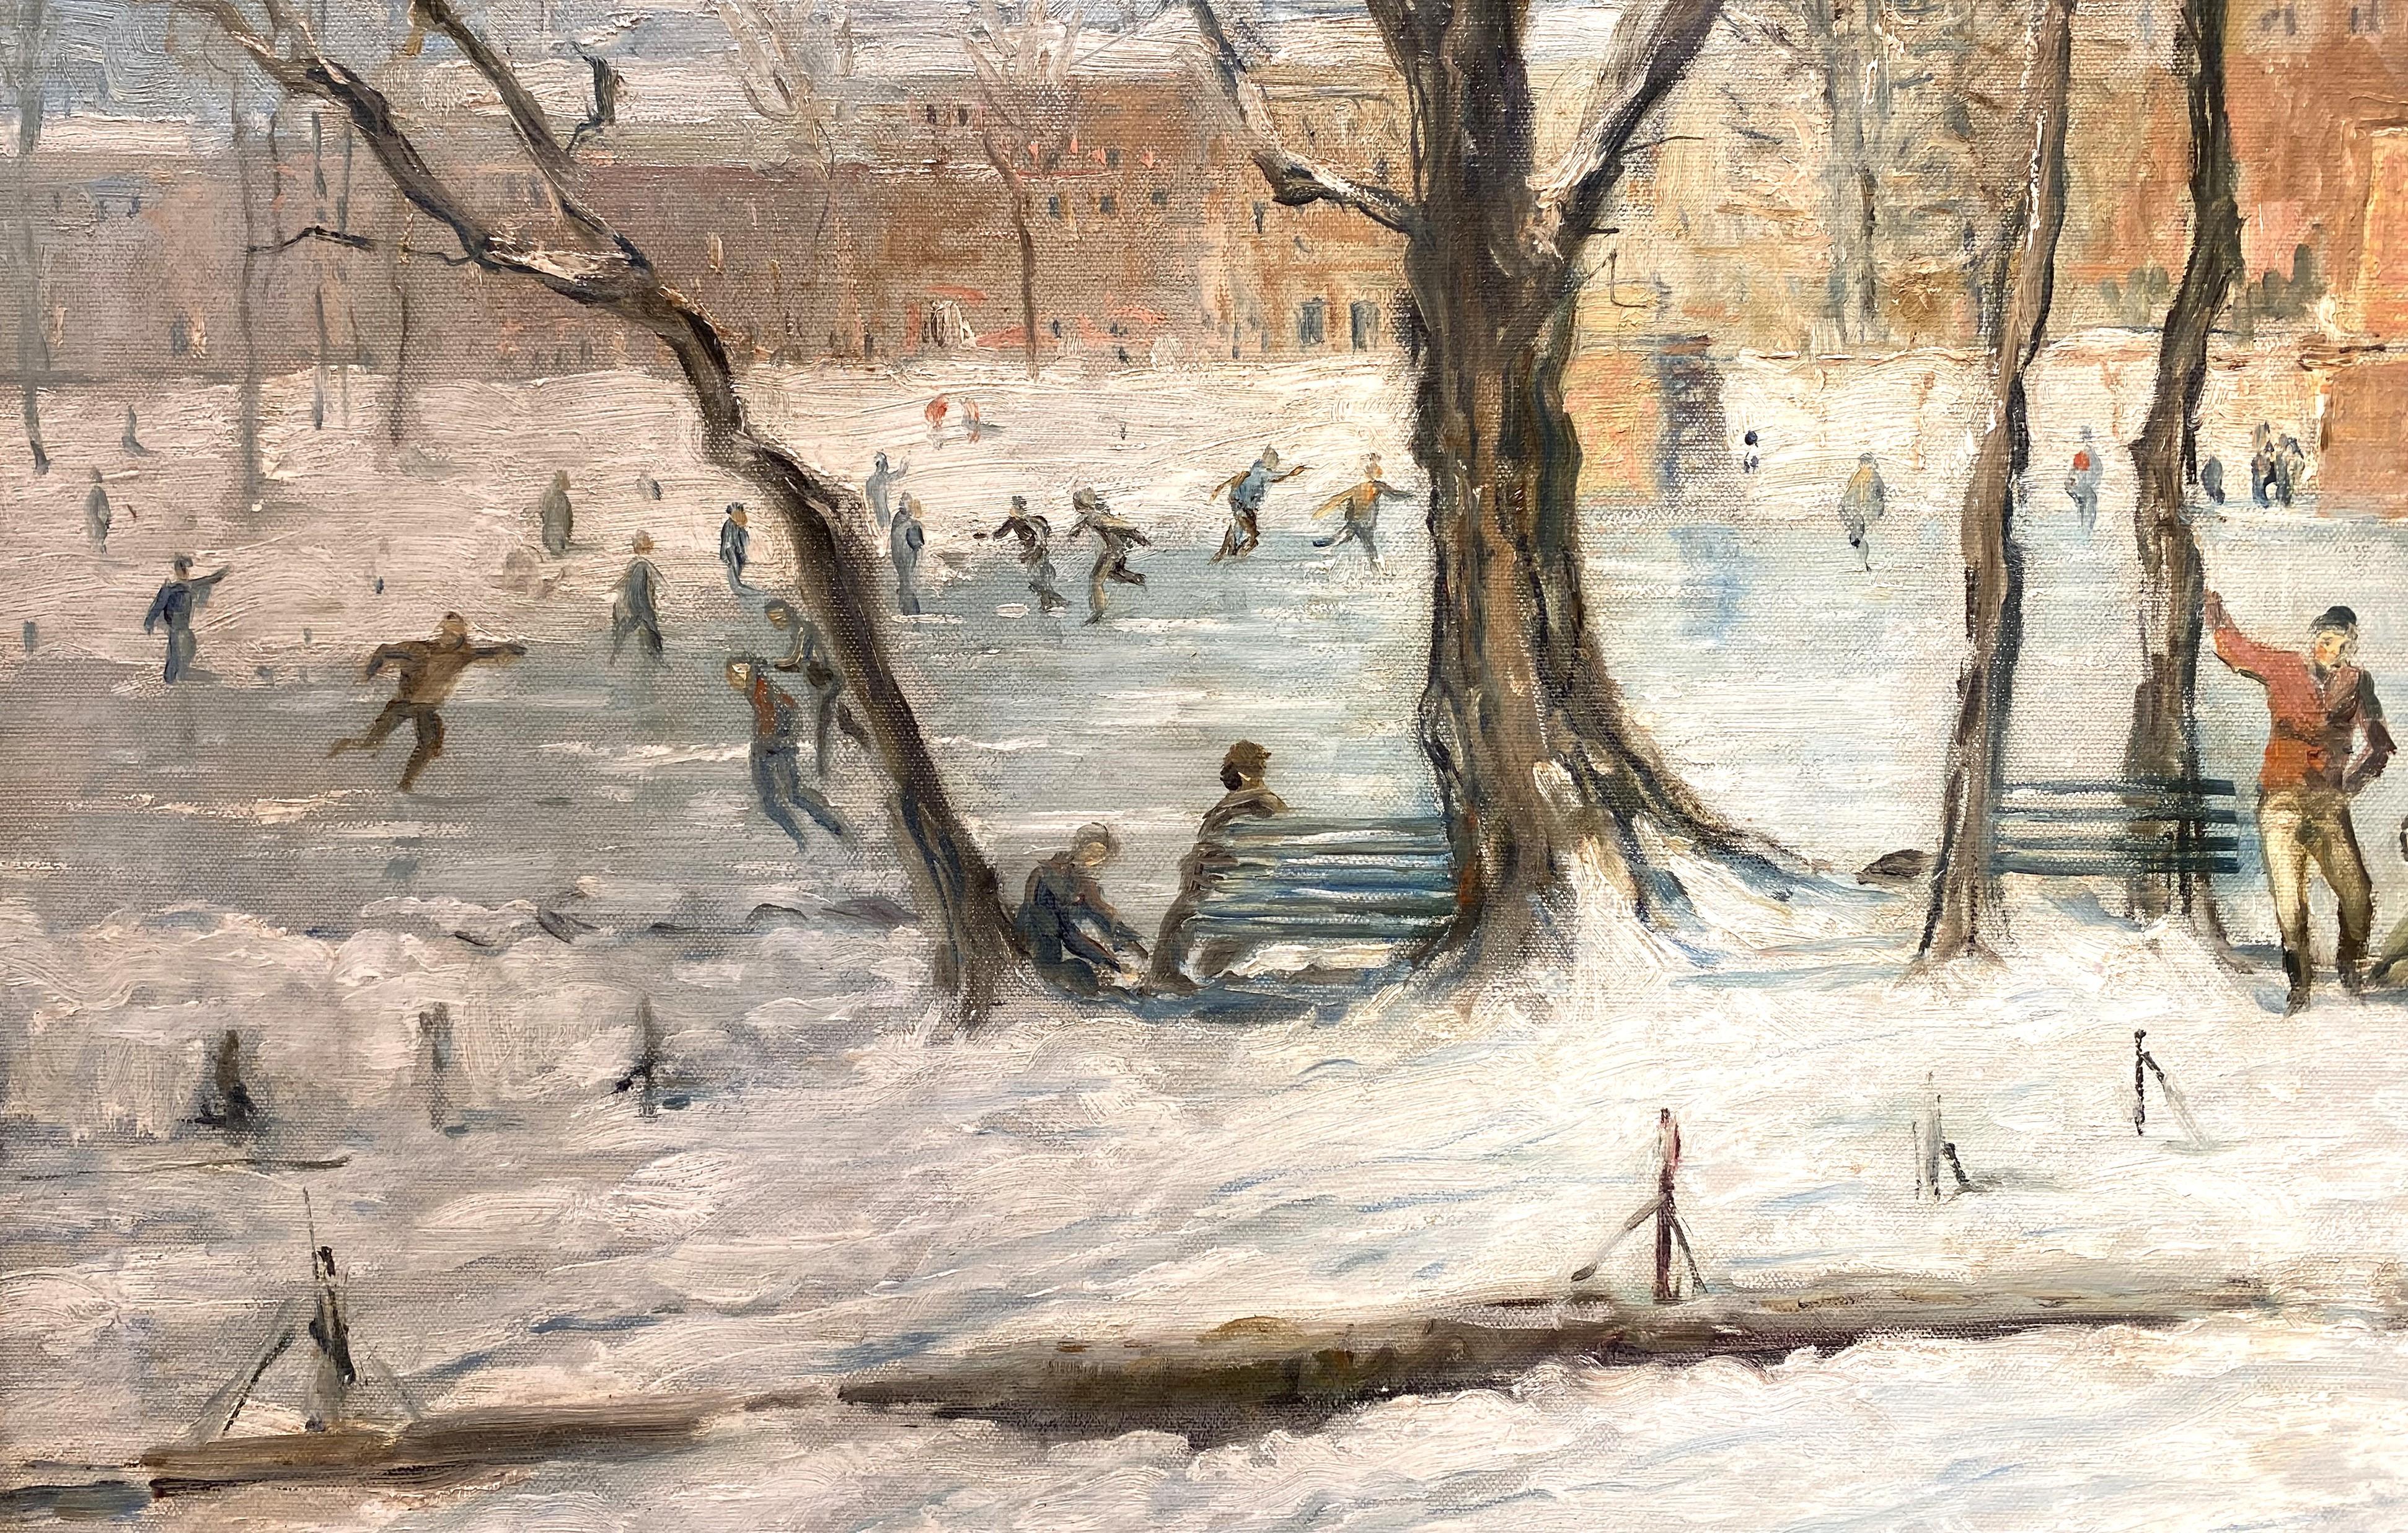 Un beau paysage urbain hivernal avec une scène amusante de personnes patinant à Boston par l'artiste américain (1864-1929). Né à Portsmouth, dans le New Hampshire, Goodwin a vécu et travaillé la majeure partie de sa vie dans le Massachusetts et à